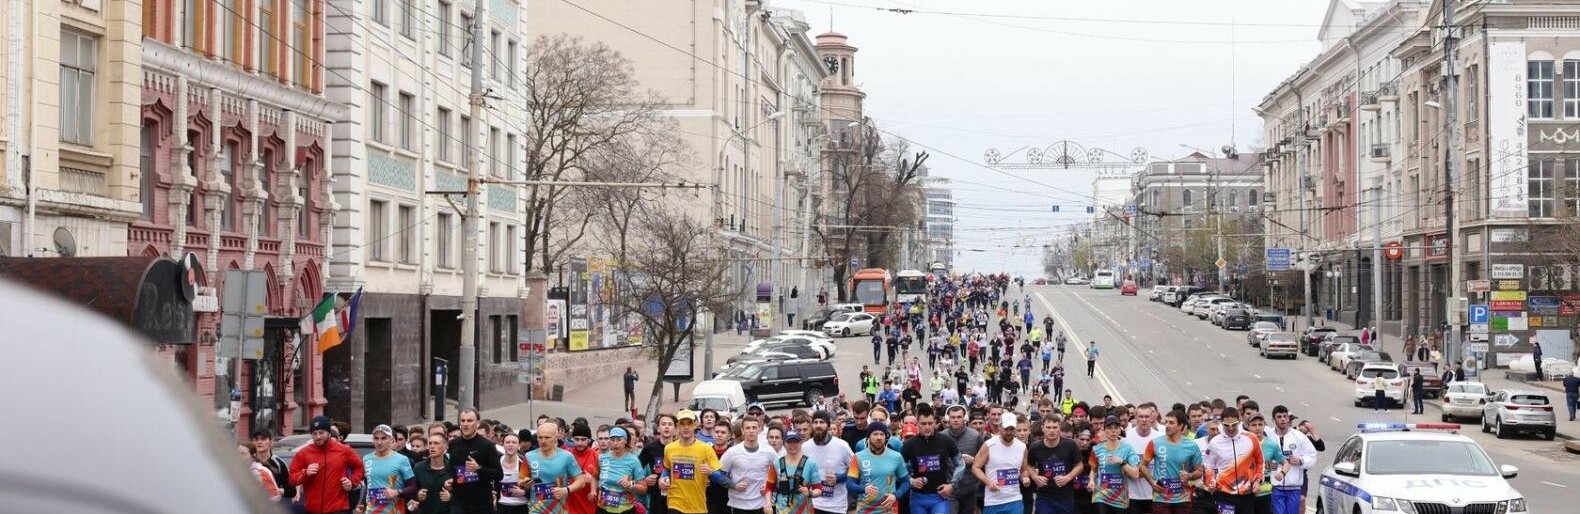 «Ростовское кольцо»: какие дороги перекроют 17 апреля для участников забега